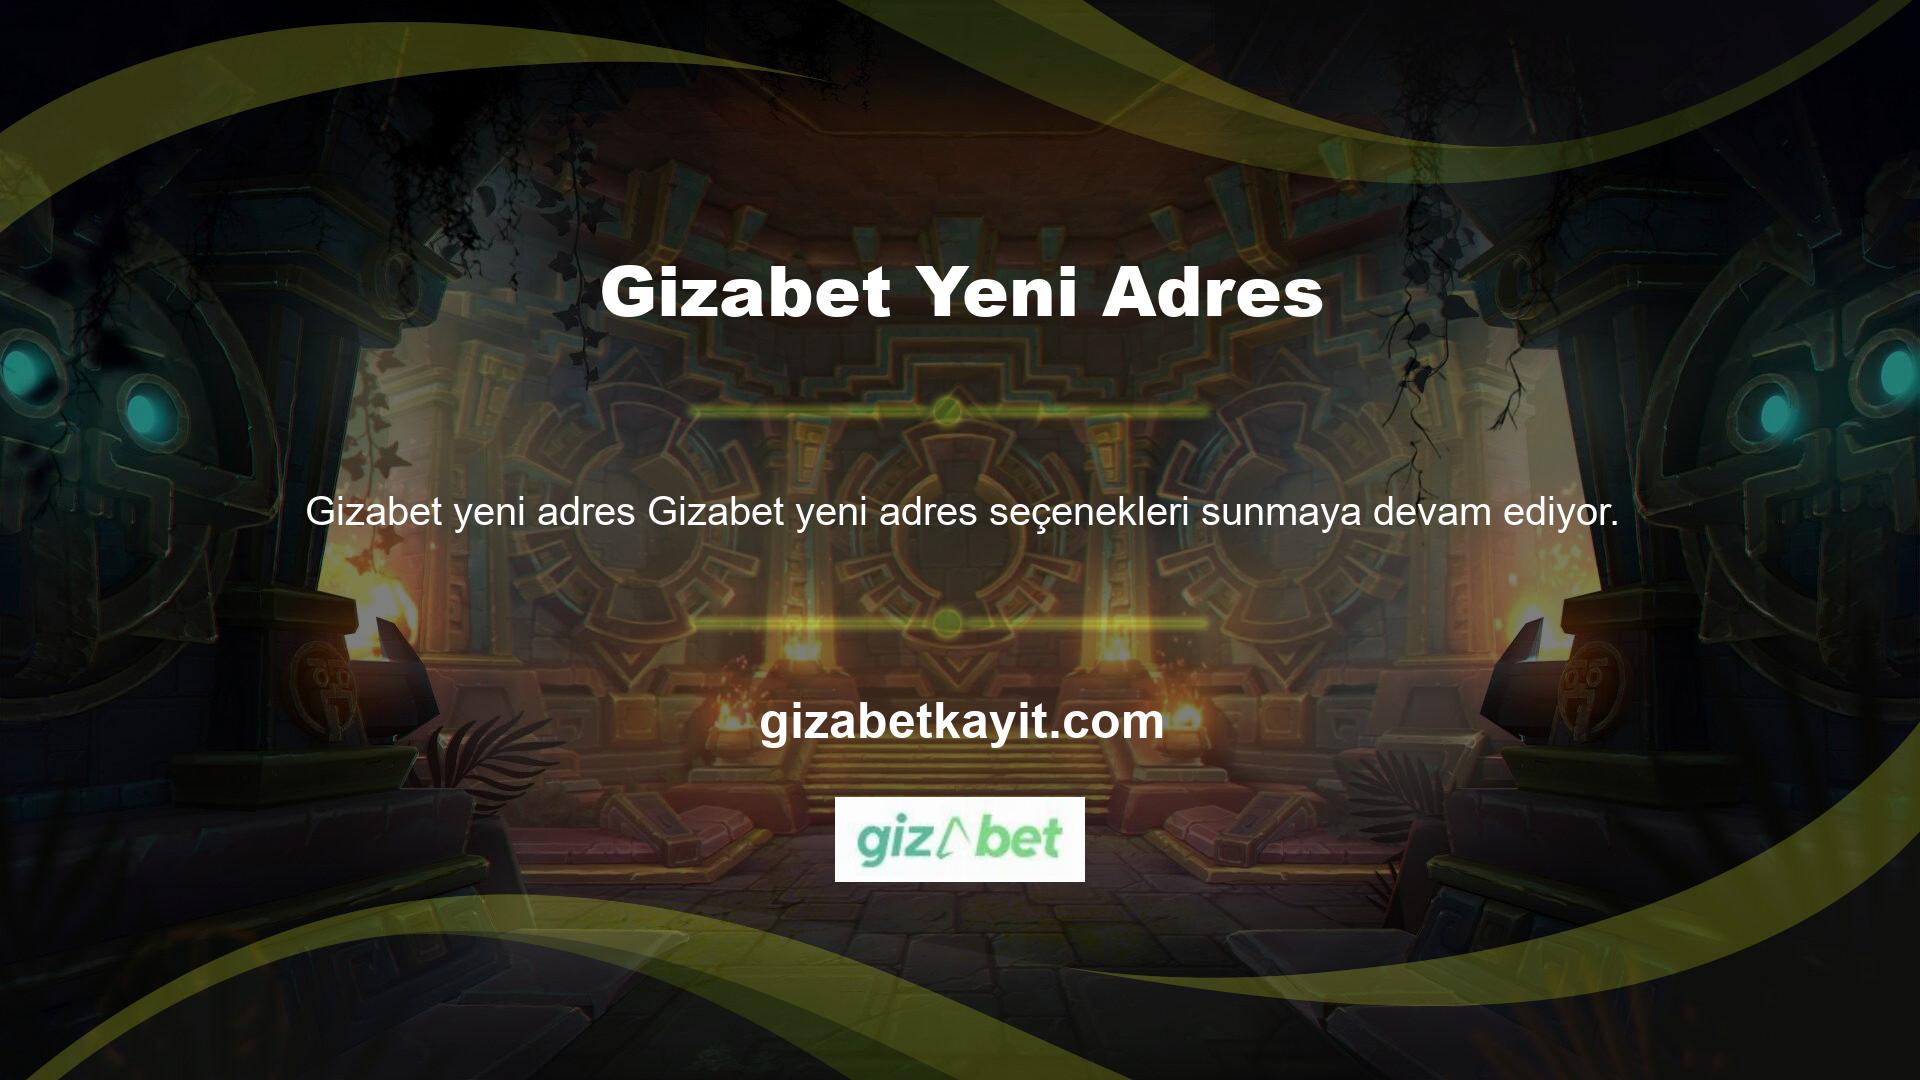 Gizabet yeni giriş adresi, resmi prosedürlere göre 7/24 çalışan bir web sitesidir